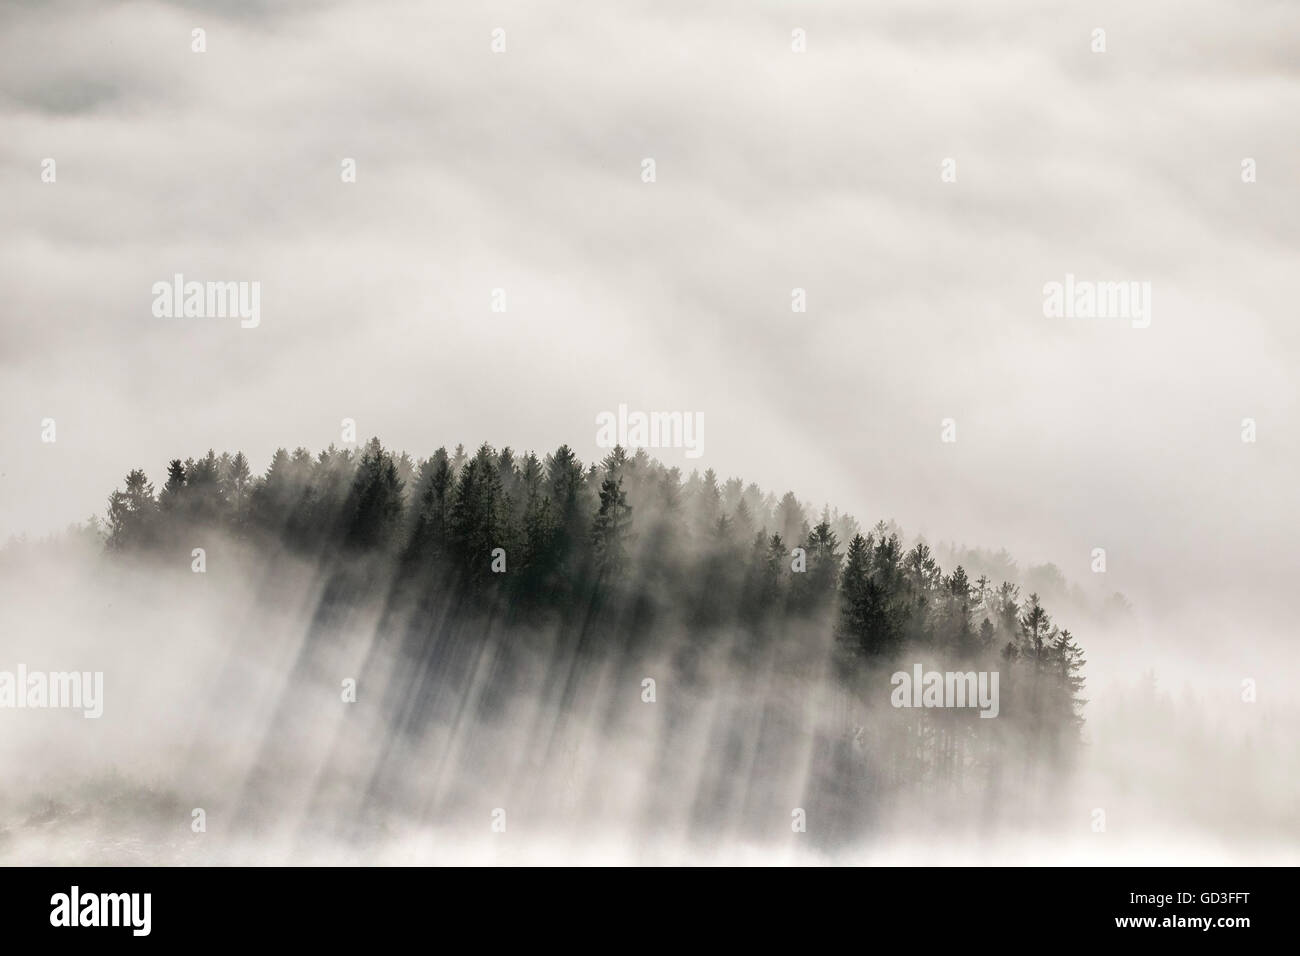 Vista aerea, copertura nuvolosa nelle valli di Meschede, Meschede, Sauerland, Renania settentrionale-Vestfalia, Germania, Europa, vista aerea, Foto Stock